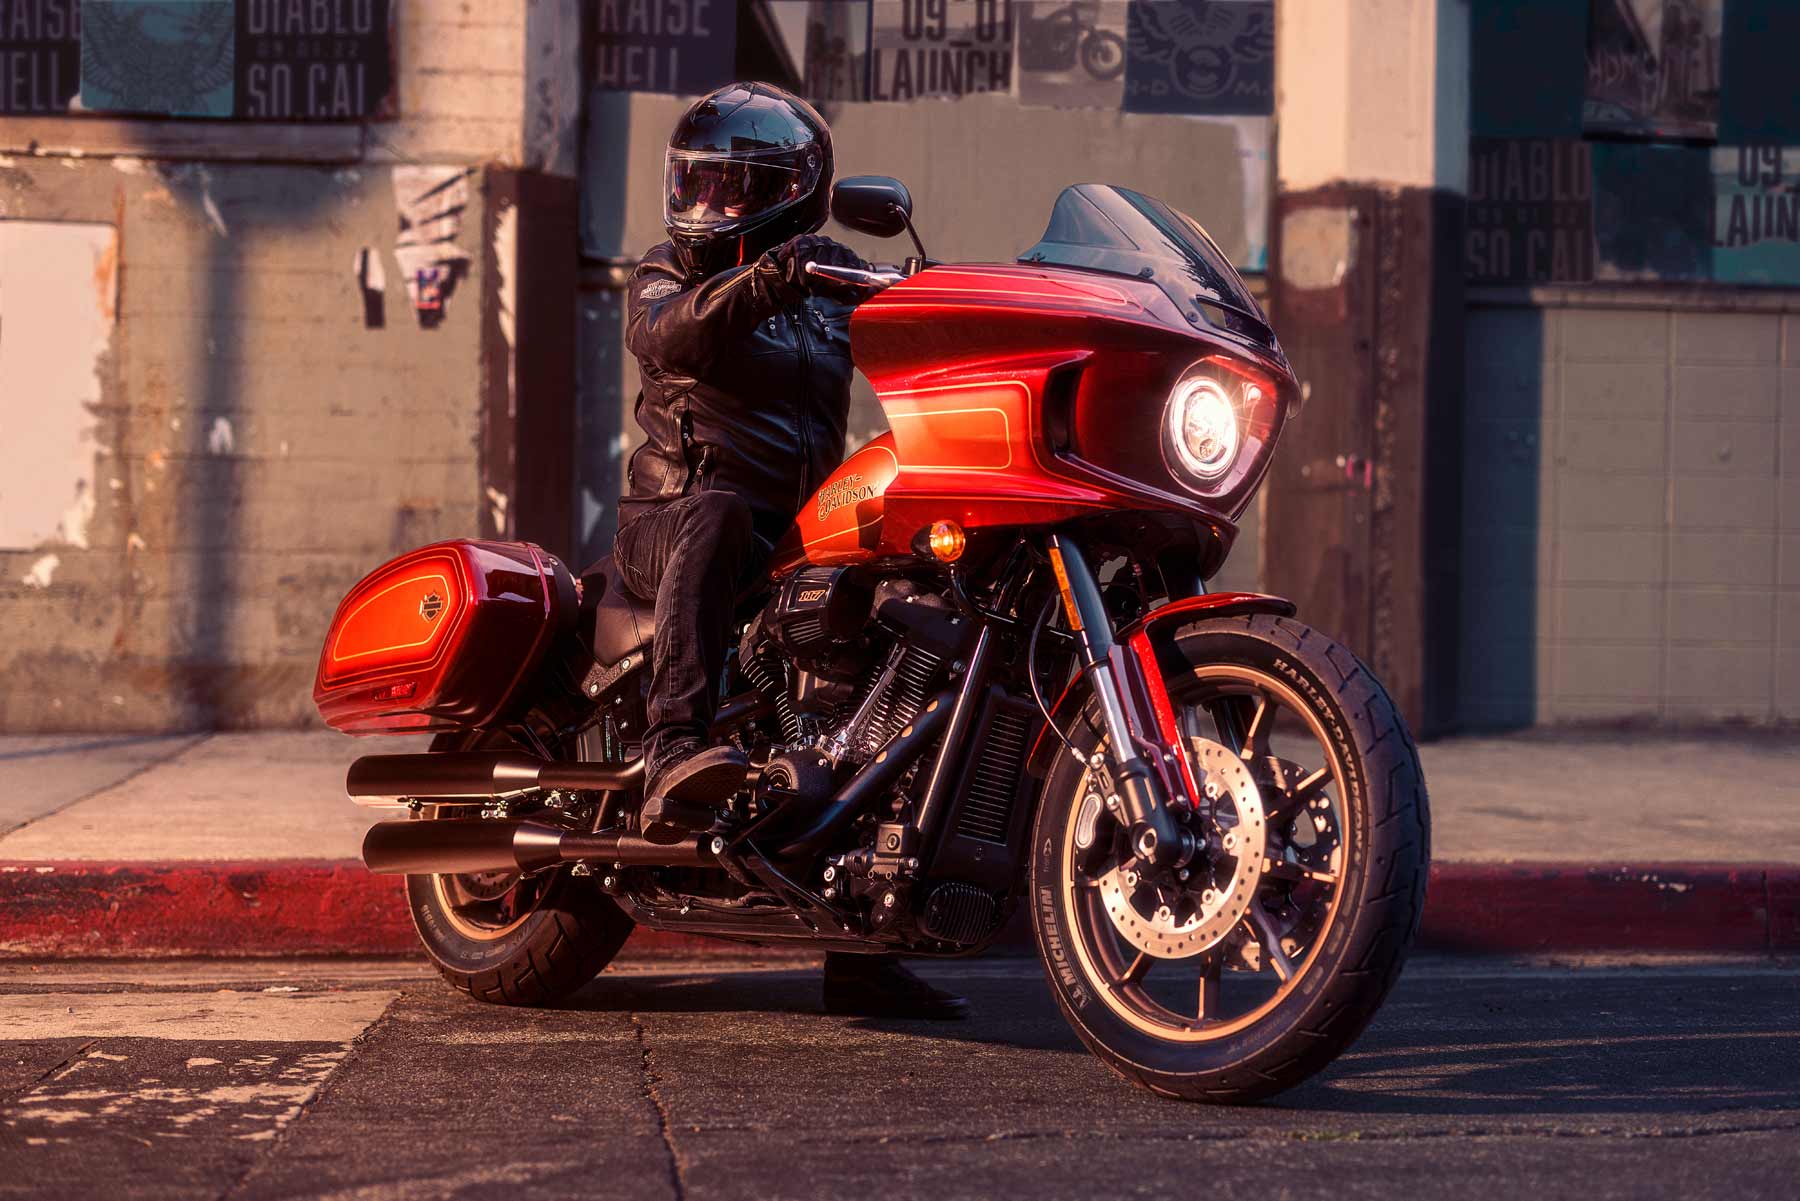 Things get devilish at Harley-Davidson